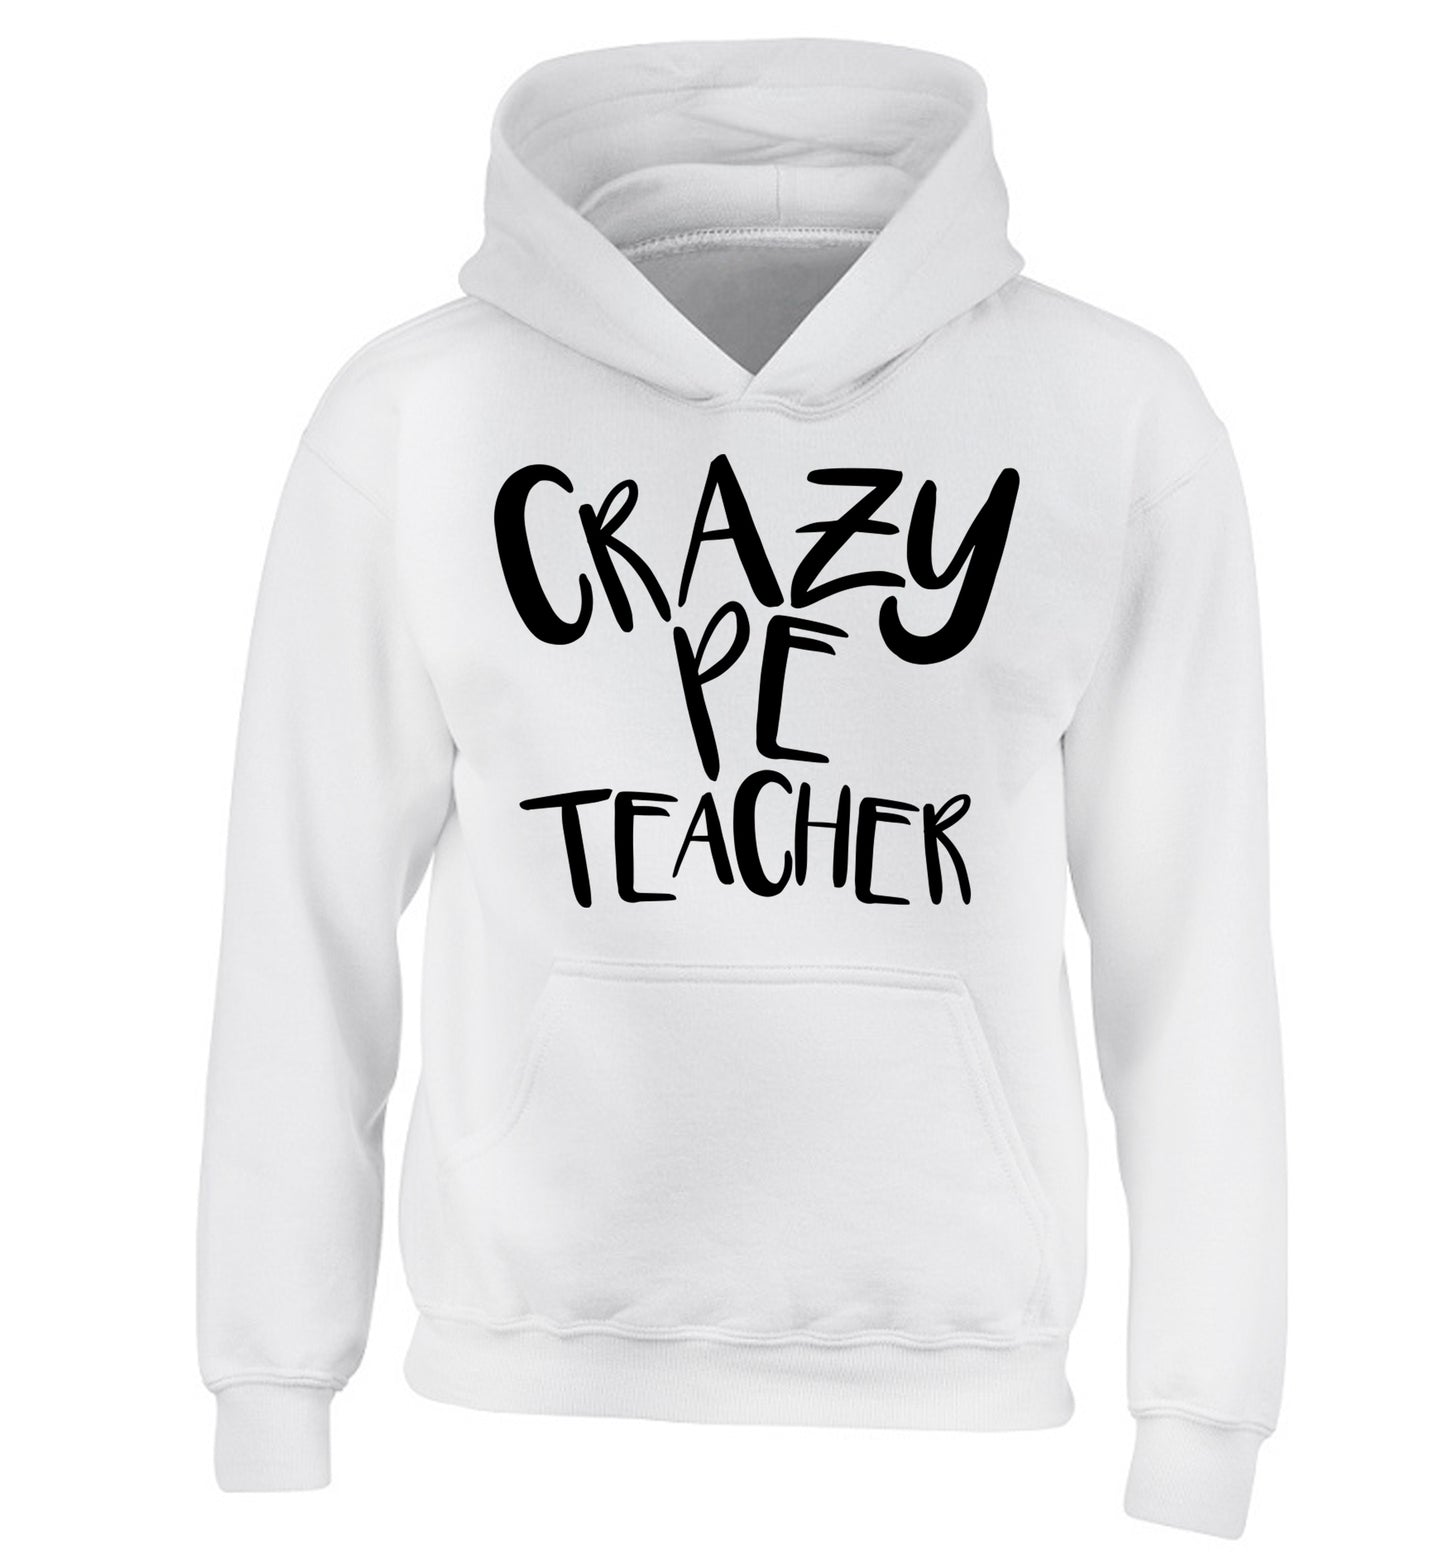 Crazy PE teacher children's white hoodie 12-13 Years